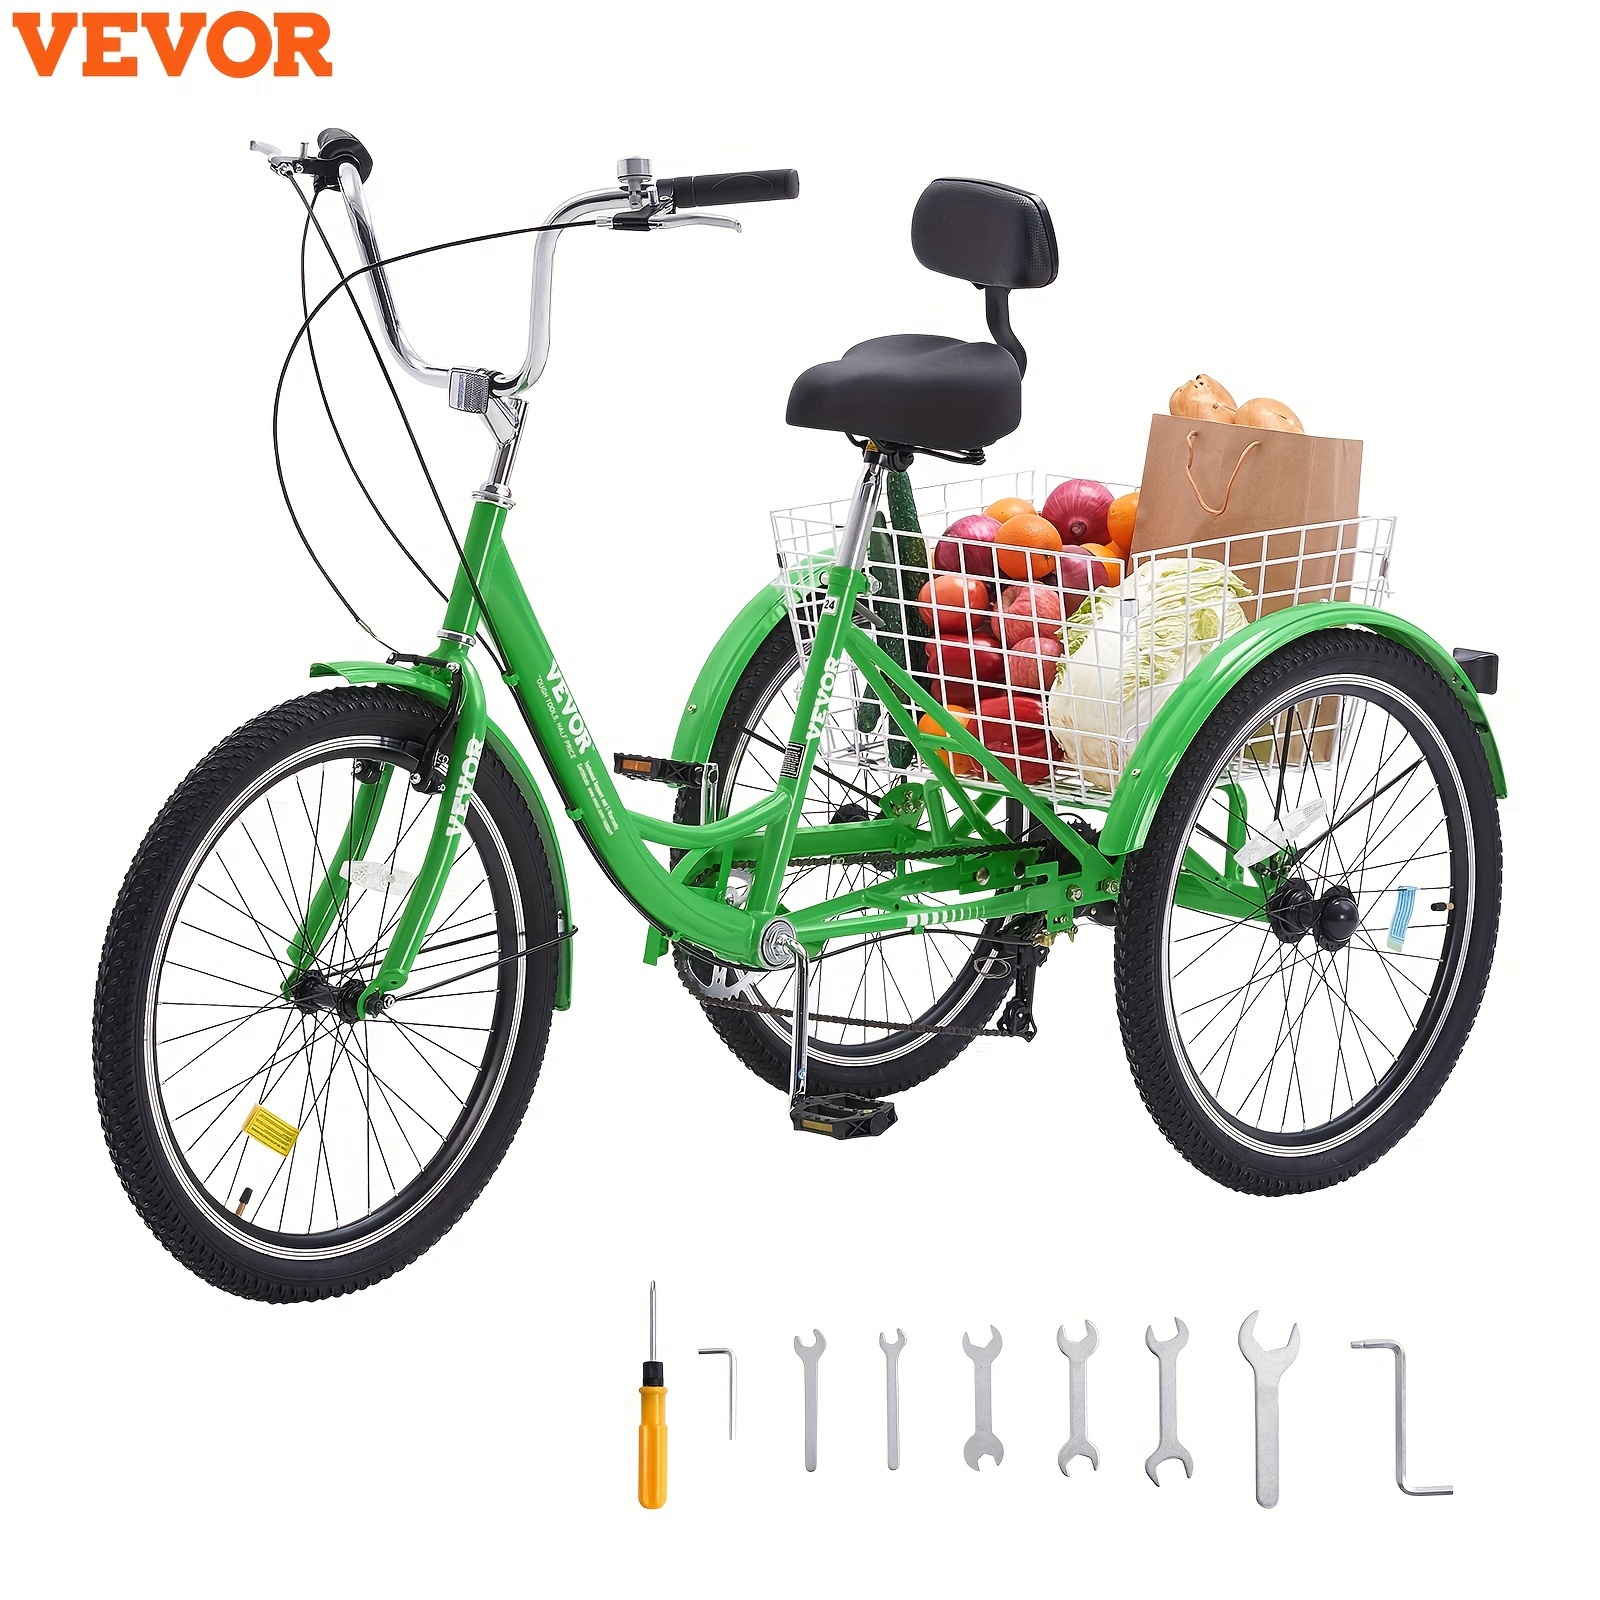 

Vevor 26" 7 Speed Adult Tricycles Bike 3 Wheel Trike Bicycle Green Carbon Steel